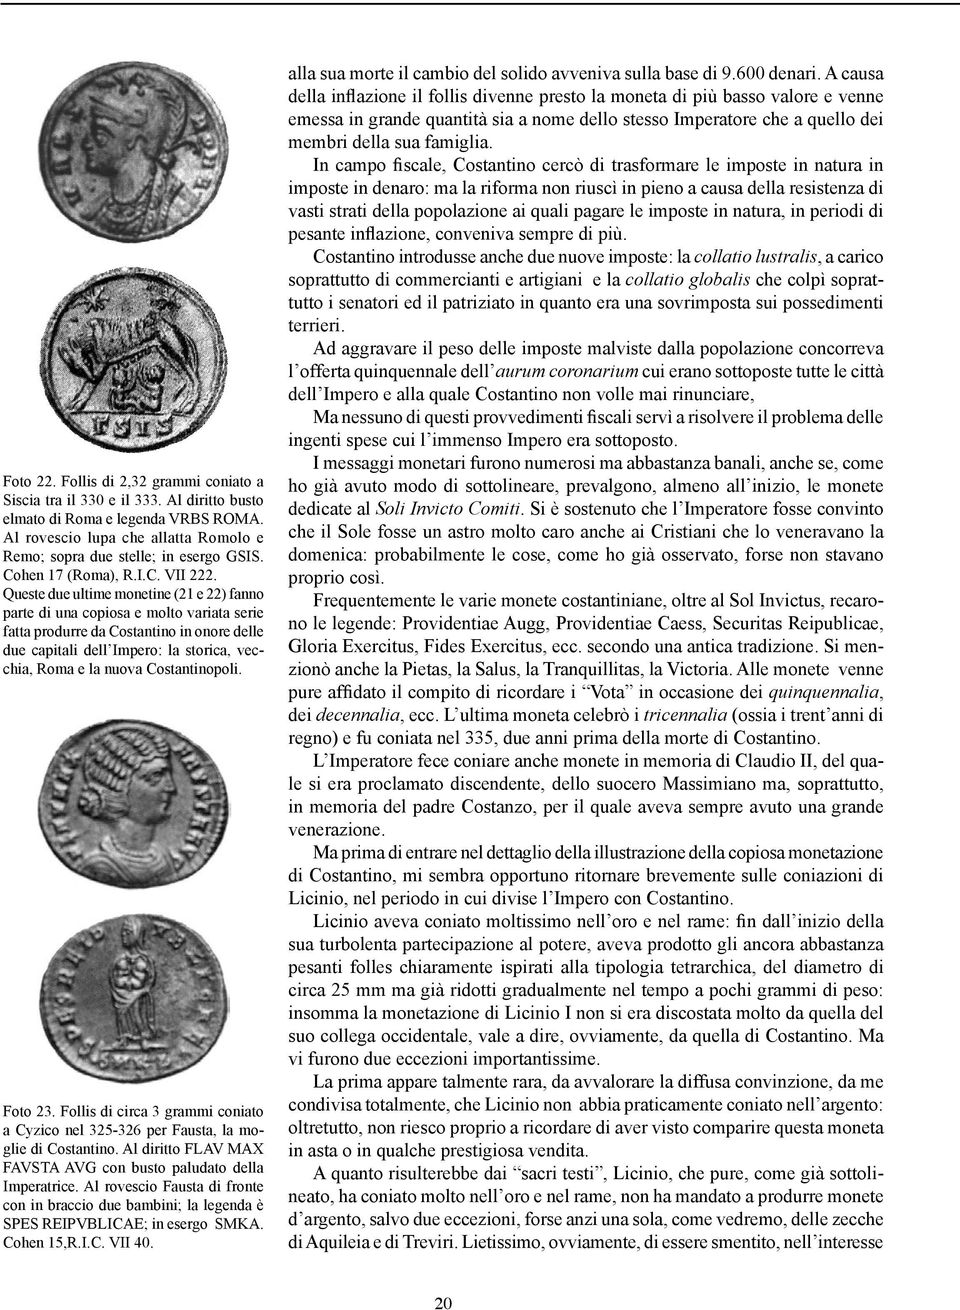 Queste due ultime monetine (21 e 22) fanno parte di una copiosa e molto variata serie fatta produrre da Costantino in onore delle due capitali dell Impero: la storica, vecchia, Roma e la nuova